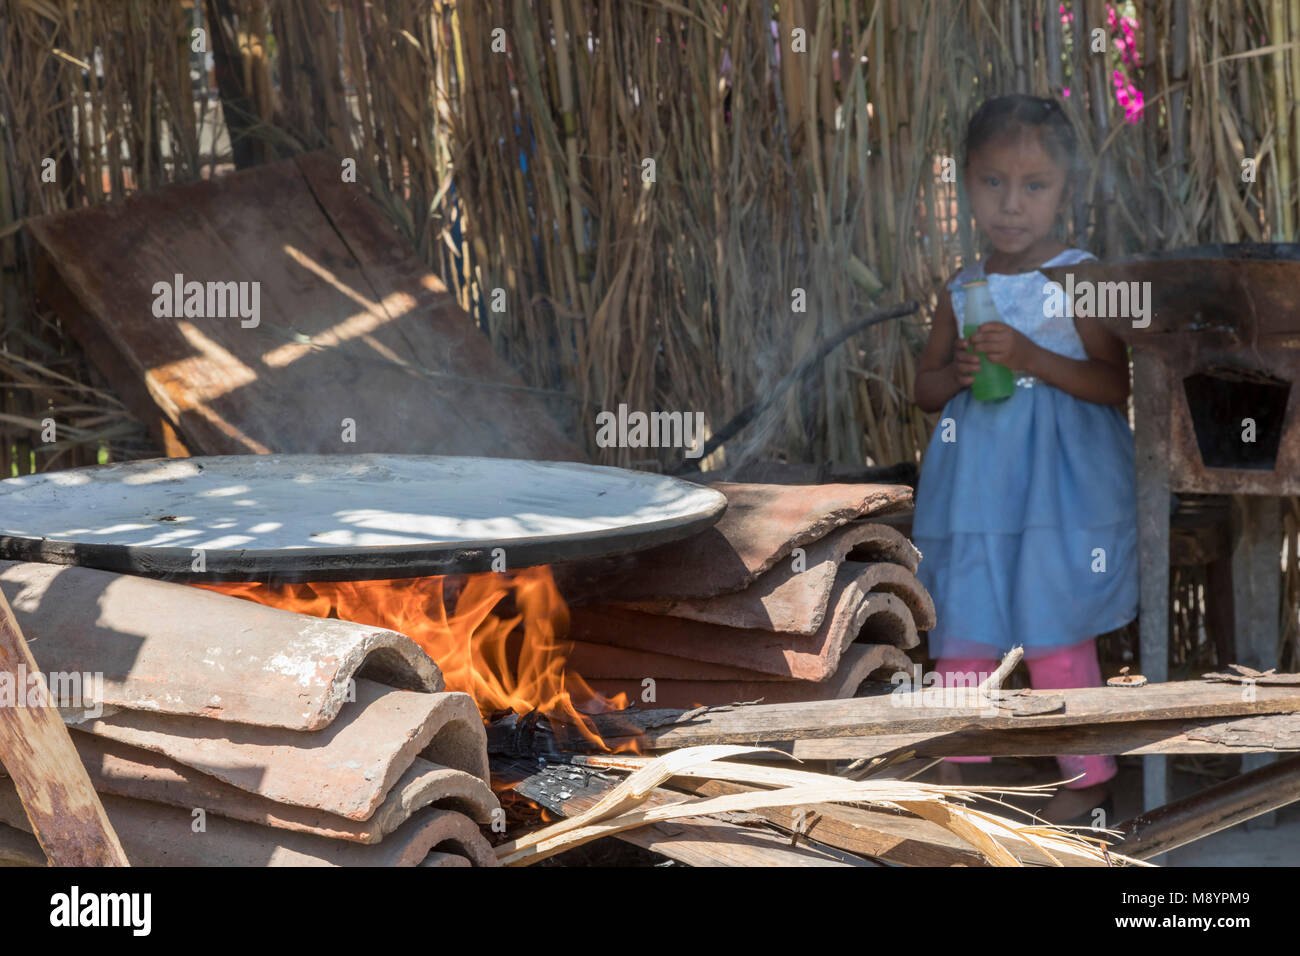 San Juan Teitipac, Oaxaca, Mexiko - ein Mädchen Uhren eine comal Heizung auf offenem Feuer während des sprachlichen und kulturellen Erbes Messe in einem kleinen Zapotec Stadt. Th Stockfoto